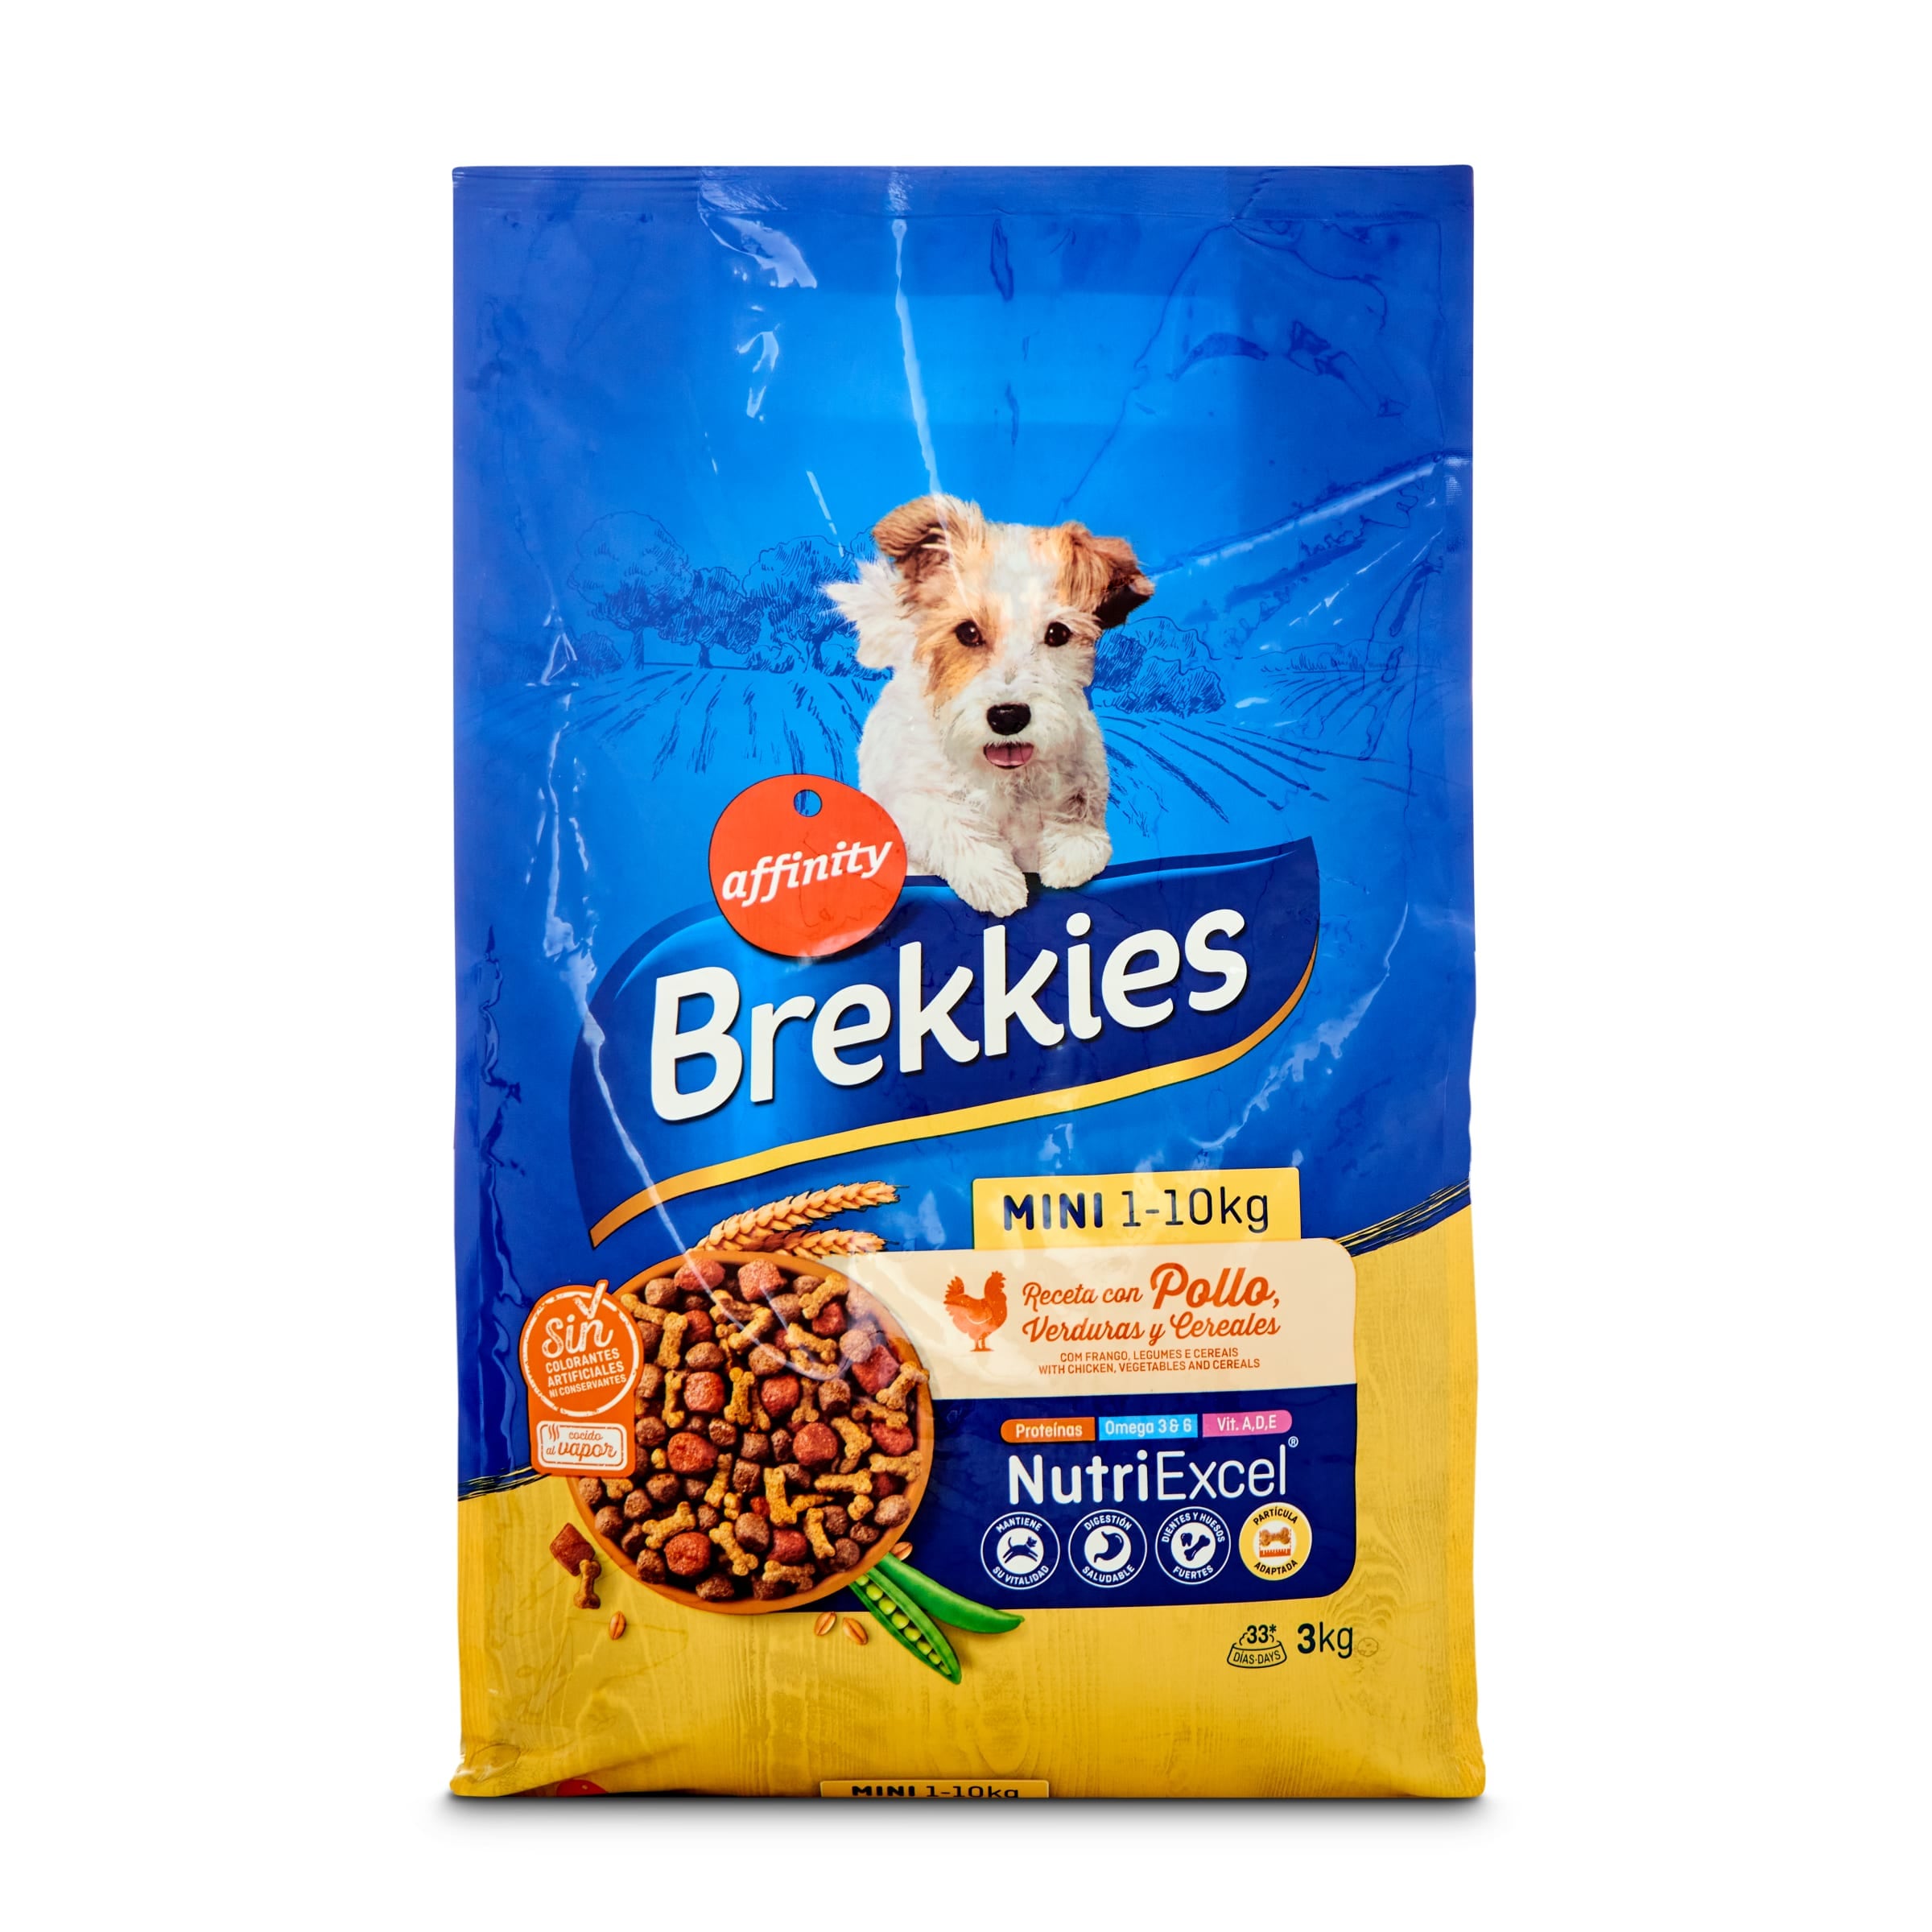 Pienso de buey, verduras y cereales para perros Mini Tenderissimo Brekkies  1 Kg. por 4,69 de Carrefour | Preciosdesupers.es